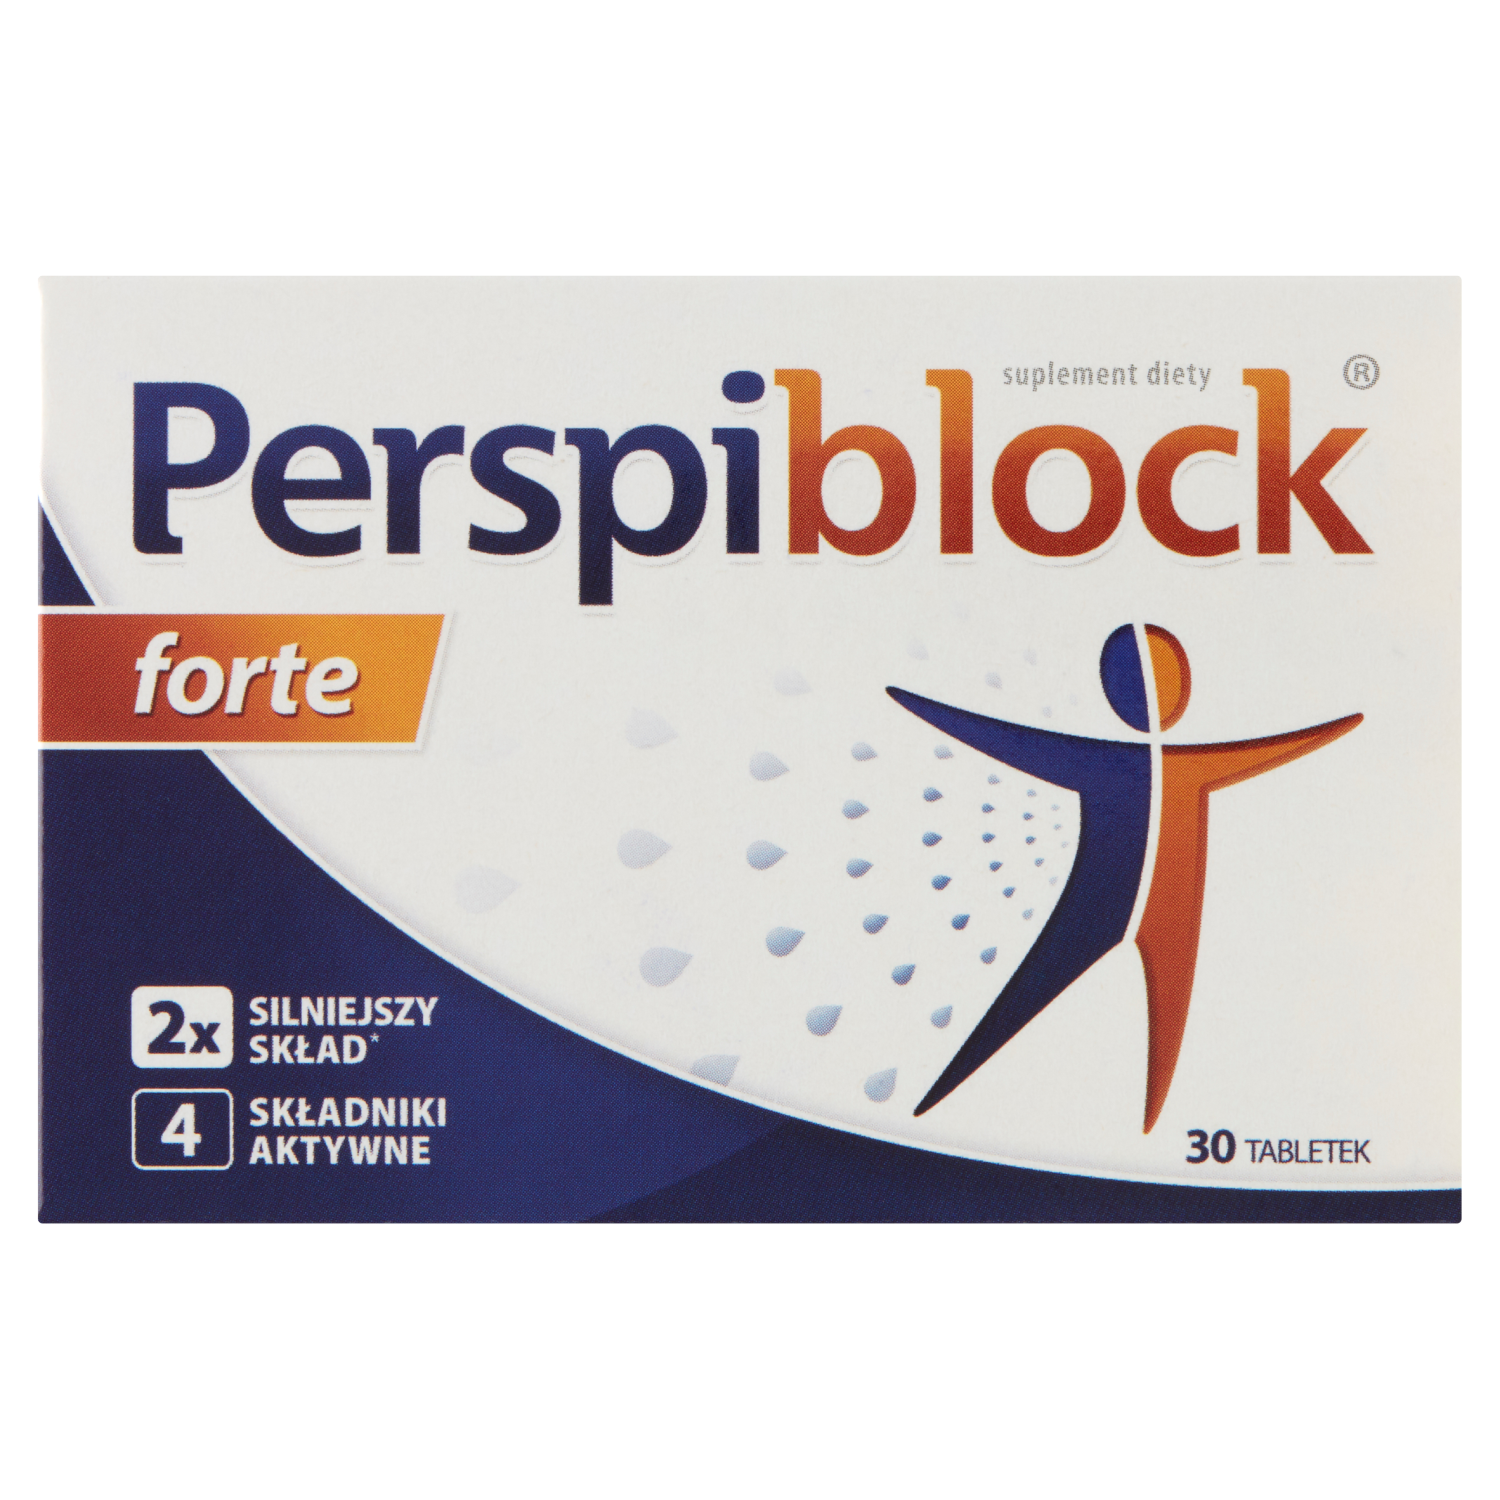 Perspiblock Forte биологически активная добавка, 30 таблеток/1 упаковка биологически активная добавка биакон troichatca forte 30 шт